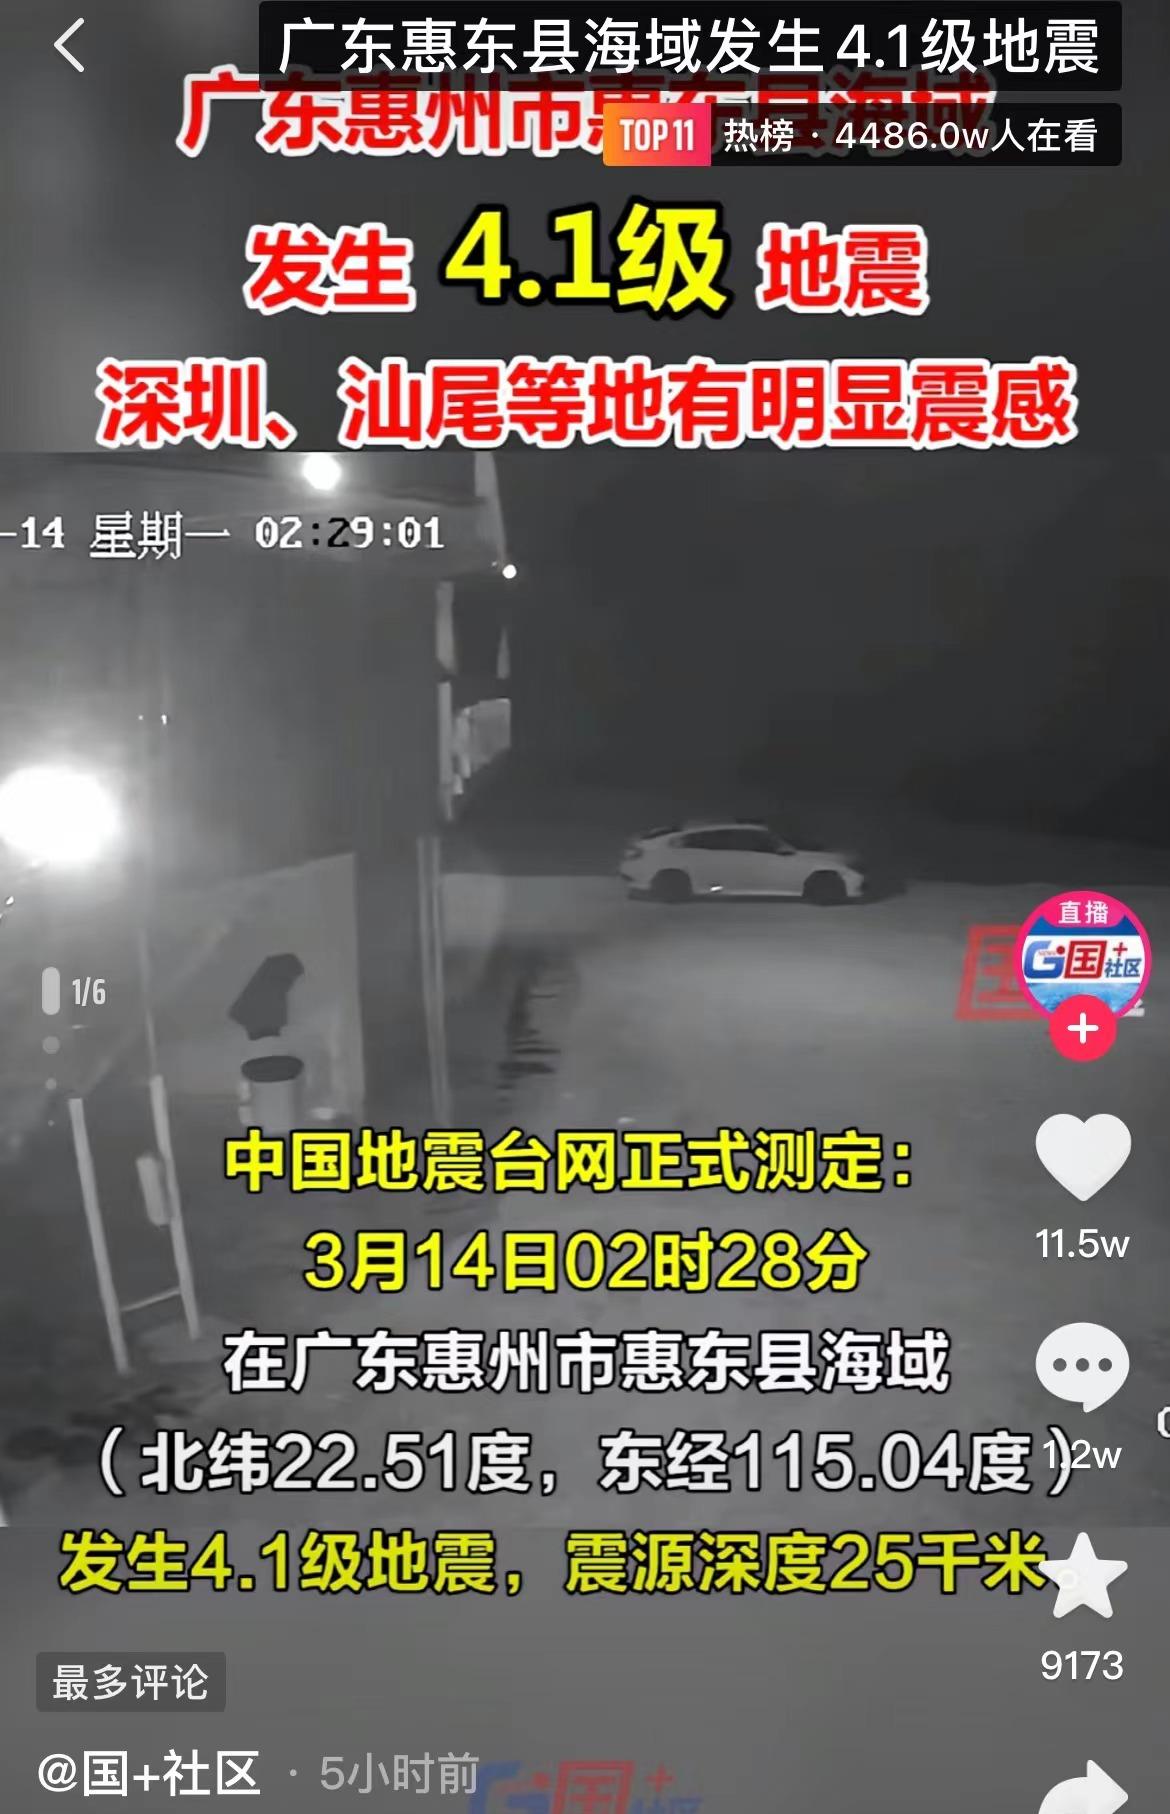 广州地震了11 16(100级地震)